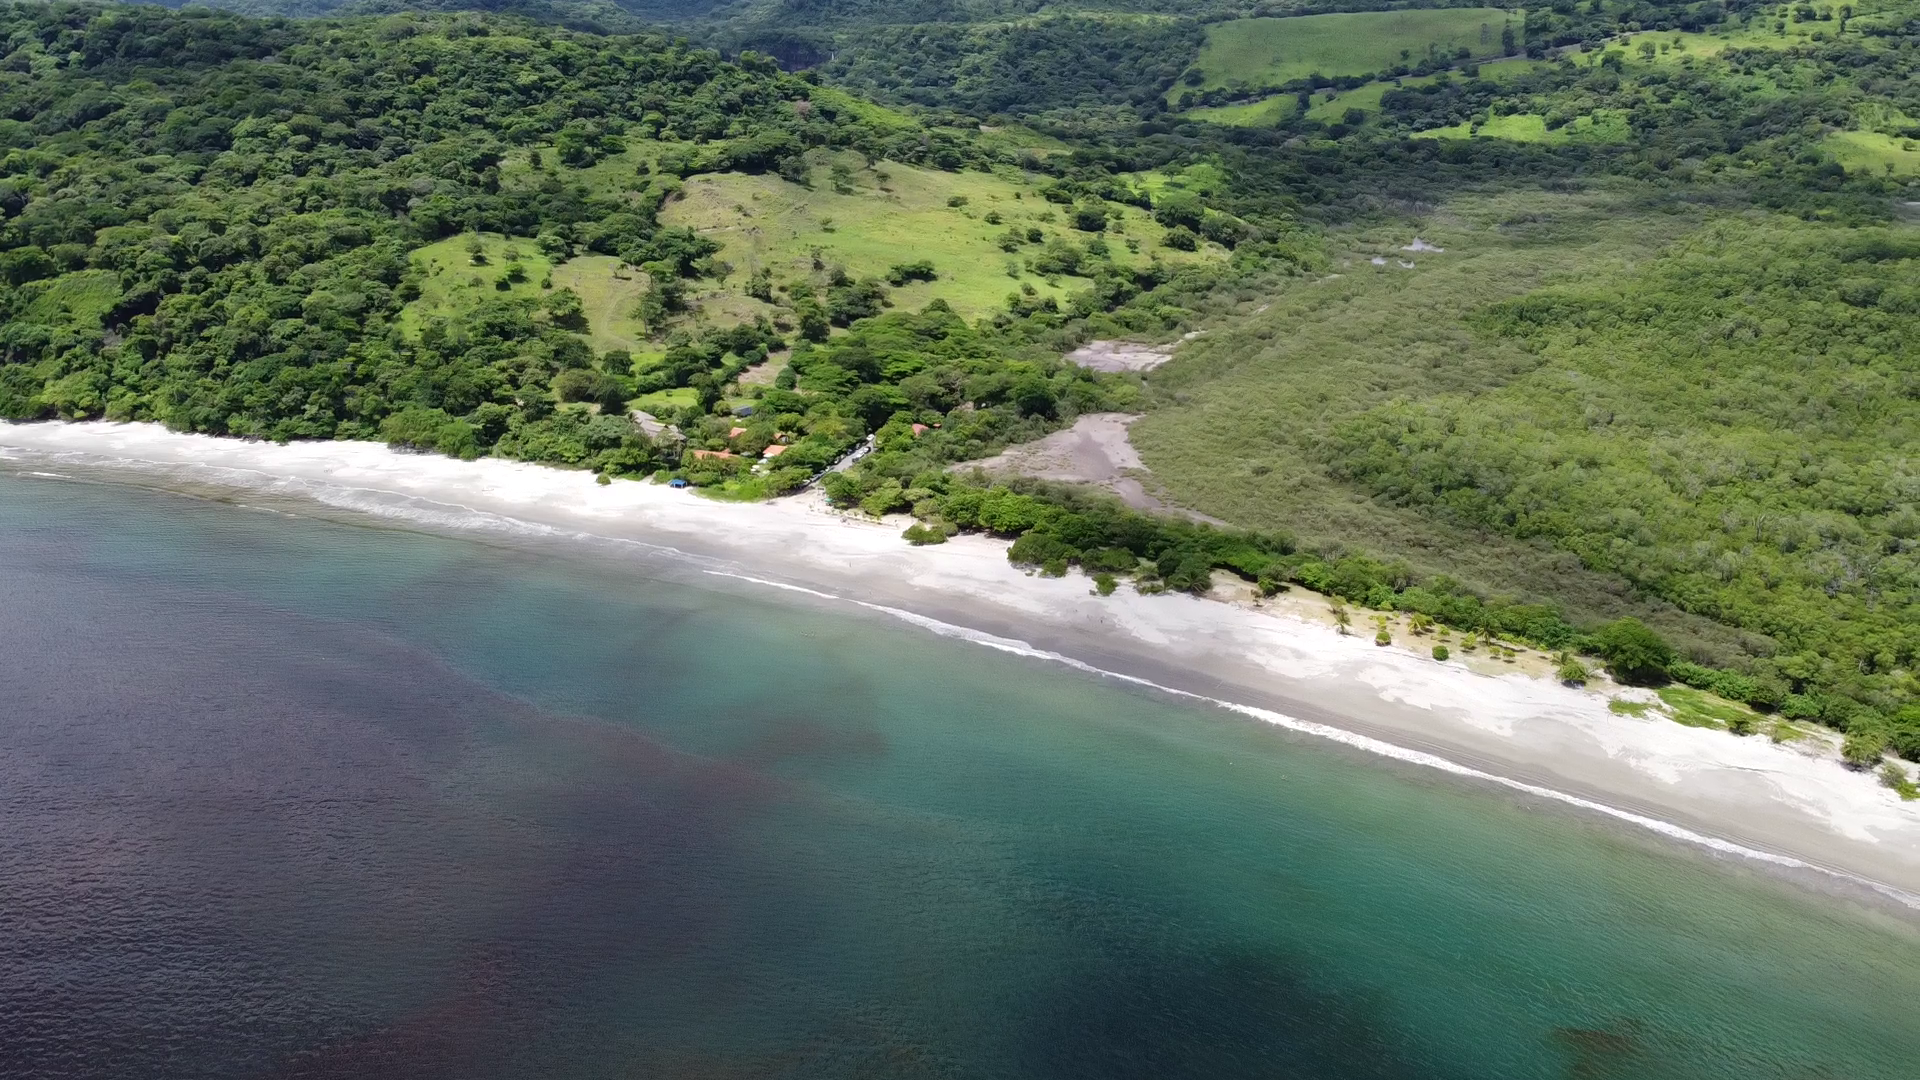 Spiagge in Costa Rica